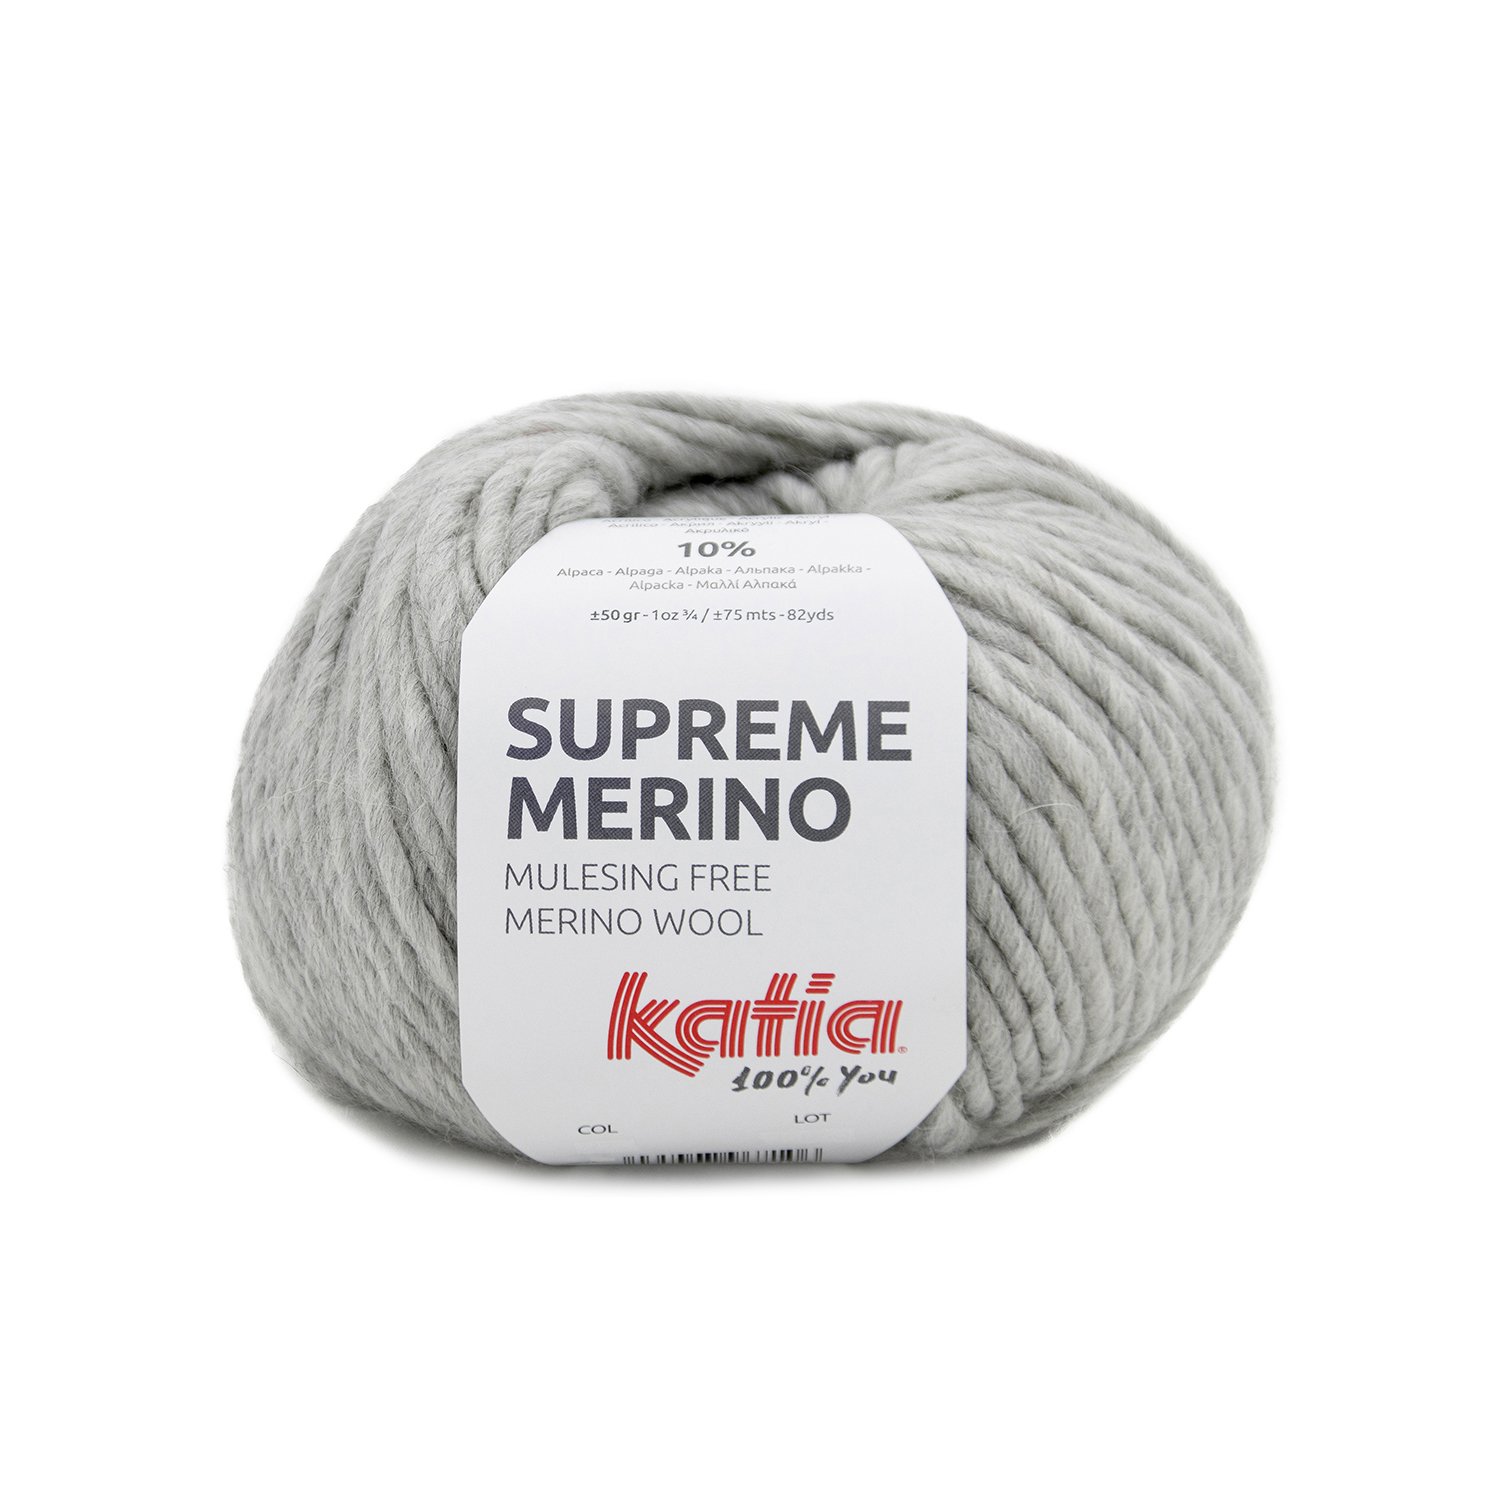 Grosse laine mèche Extra Wool 154 Gris 100 Laine - La Poste